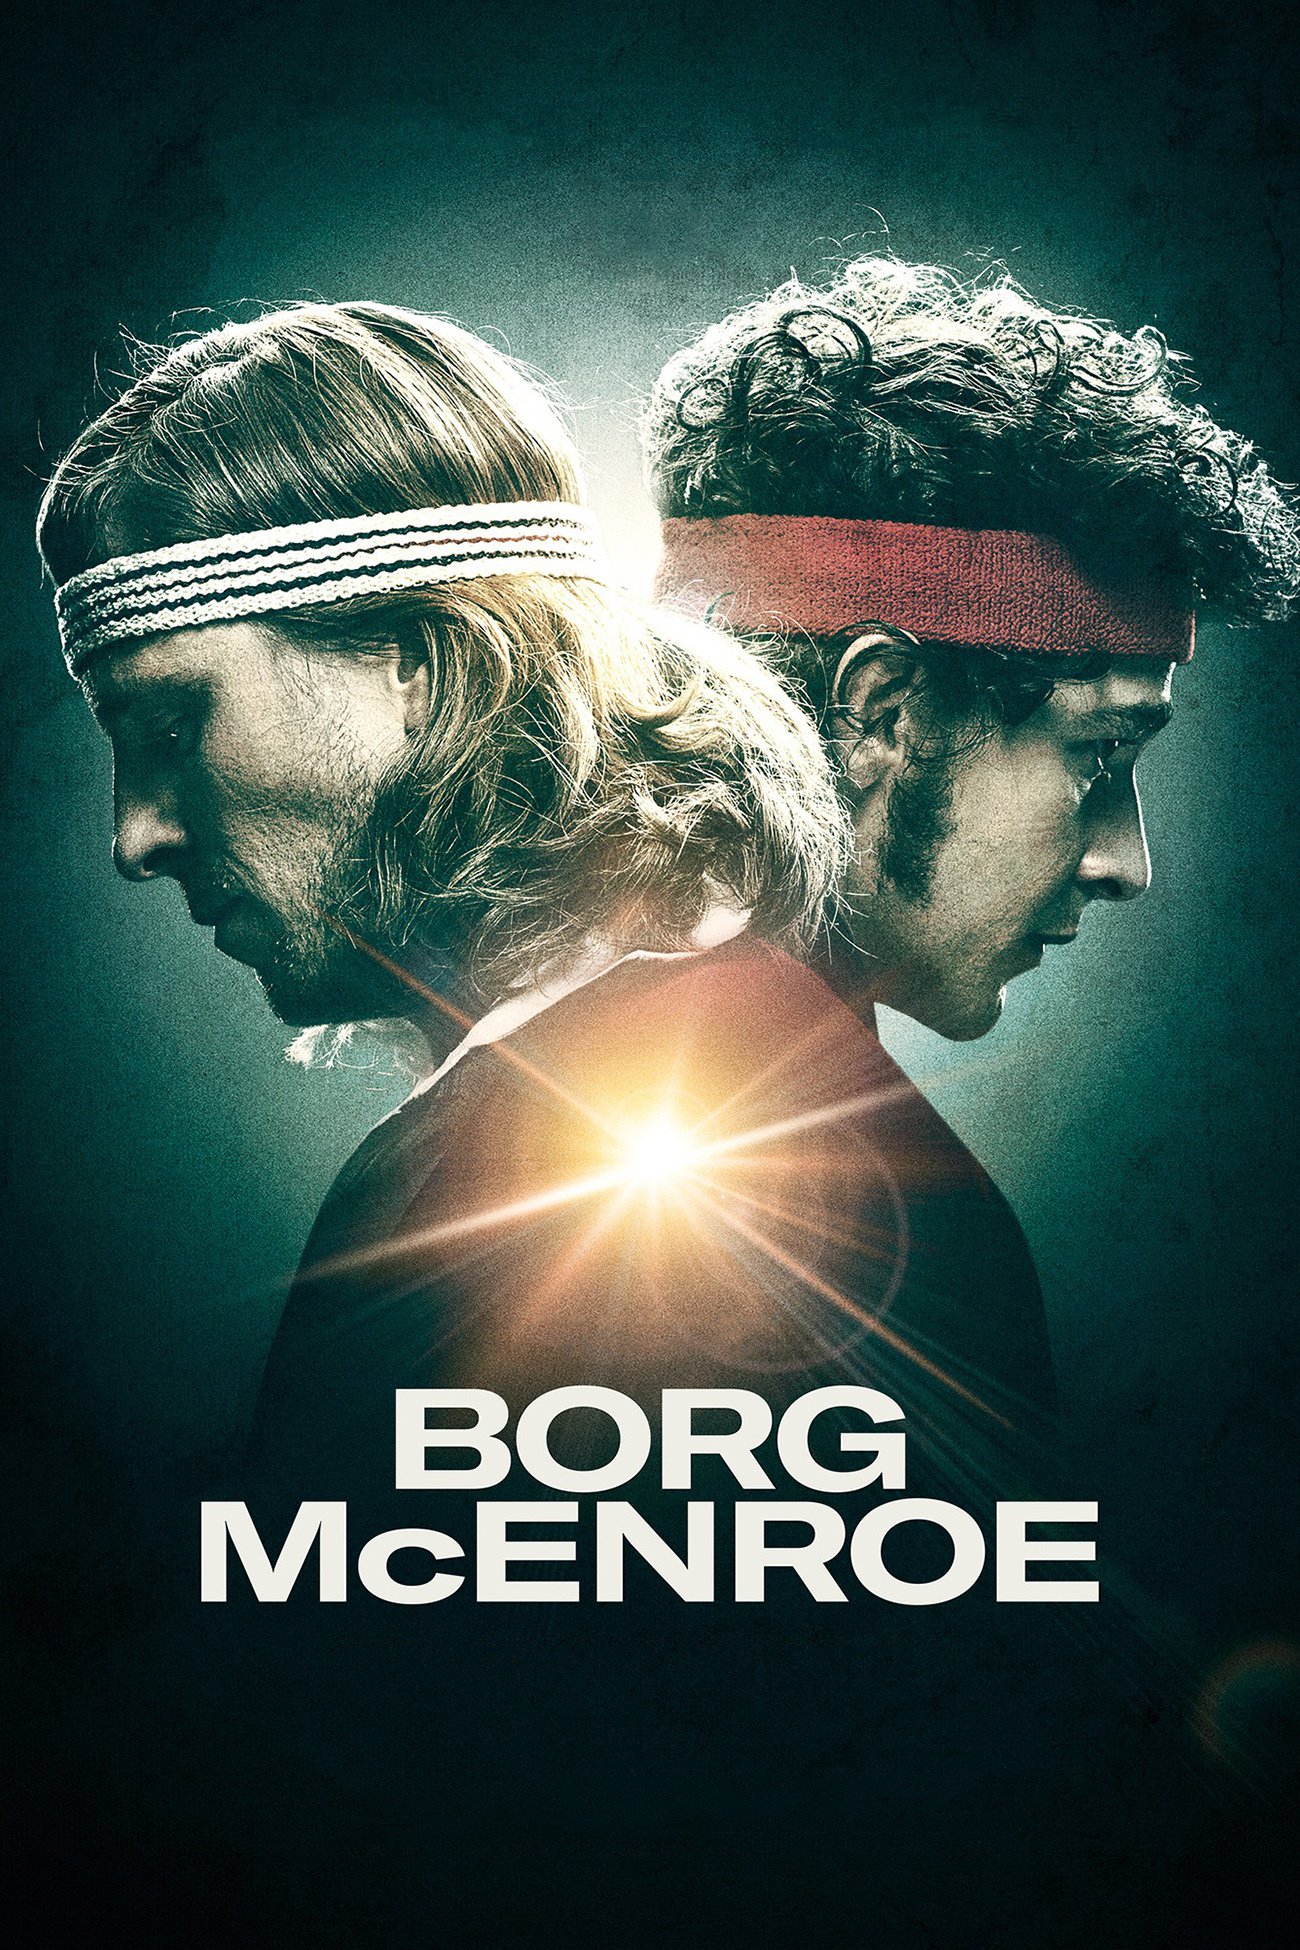 Poster for the movie "Borg vs McEnroe"